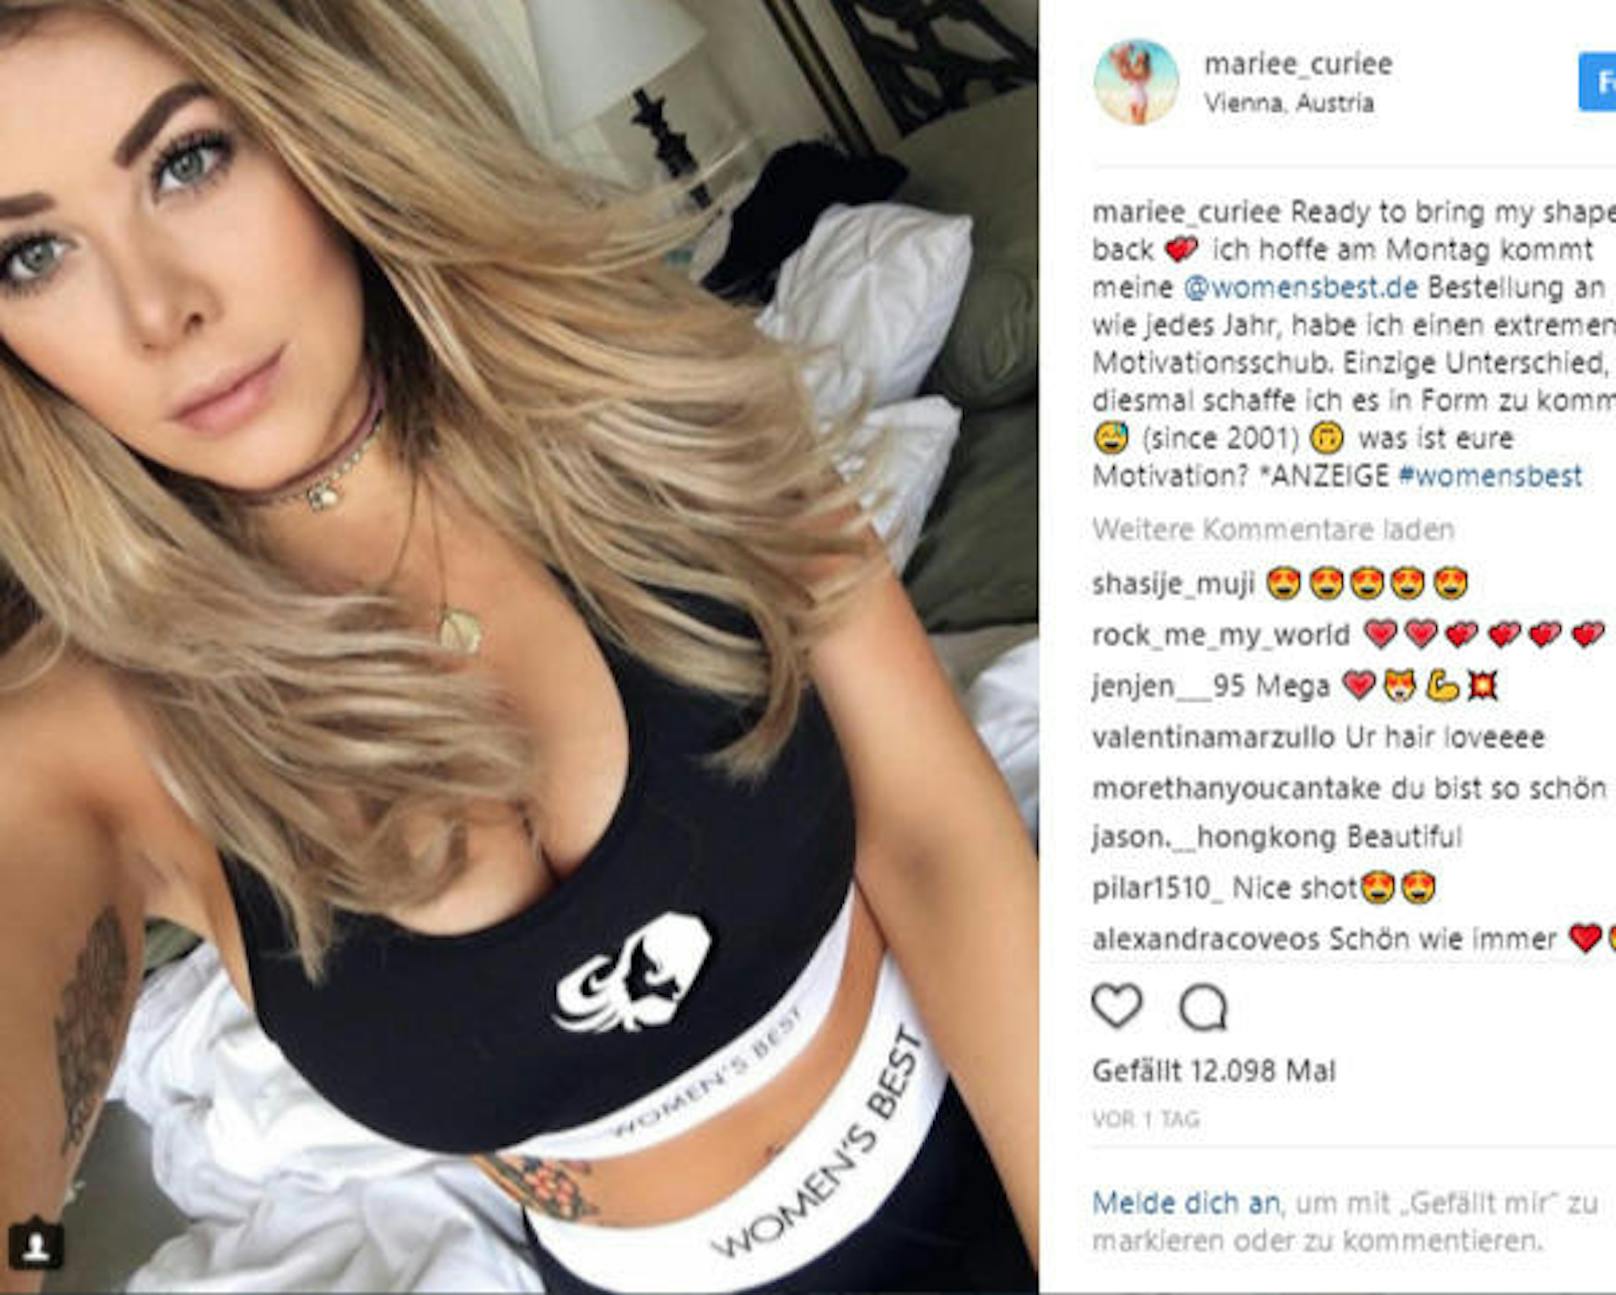 Mariee Curiee gibt gerne Schmink-Tipps oder nimmt ihr Fans auf Reisen mit. Fast 300.000 Fans hat sie bereits auf Instagram mit ihren Fotos eingesammelt. (Foto: Instagram/ Mariee_curiee)  <a href="http://instagram.com/mariee_curiee" target="_blank">Instagram Profil</a>